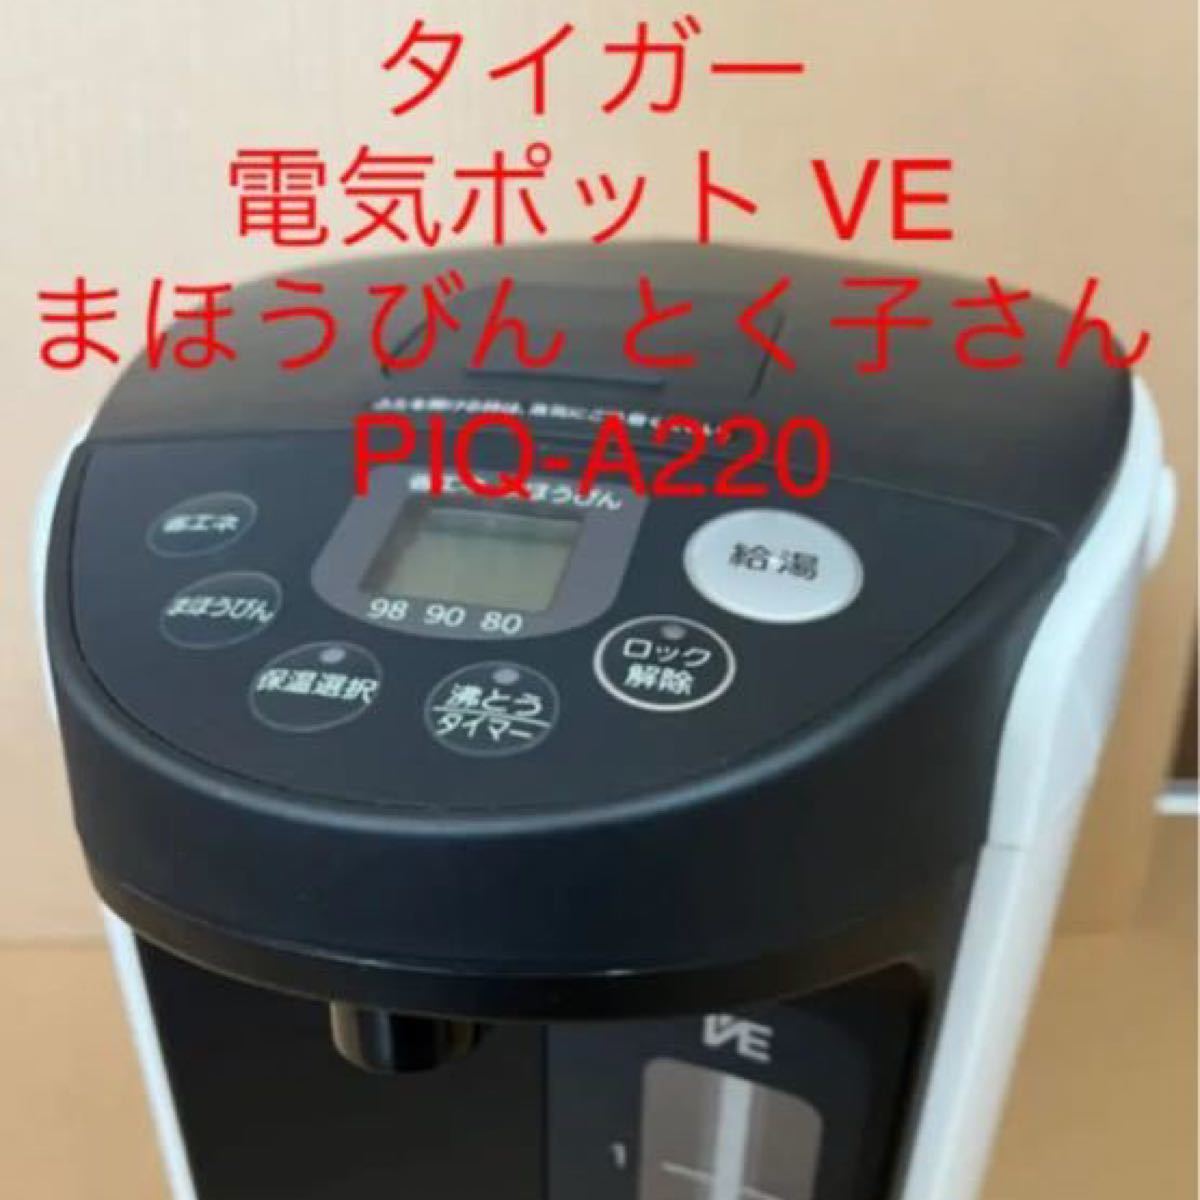 タイガー 電気ポット VE まほうびん とく子さん PIQ-A220